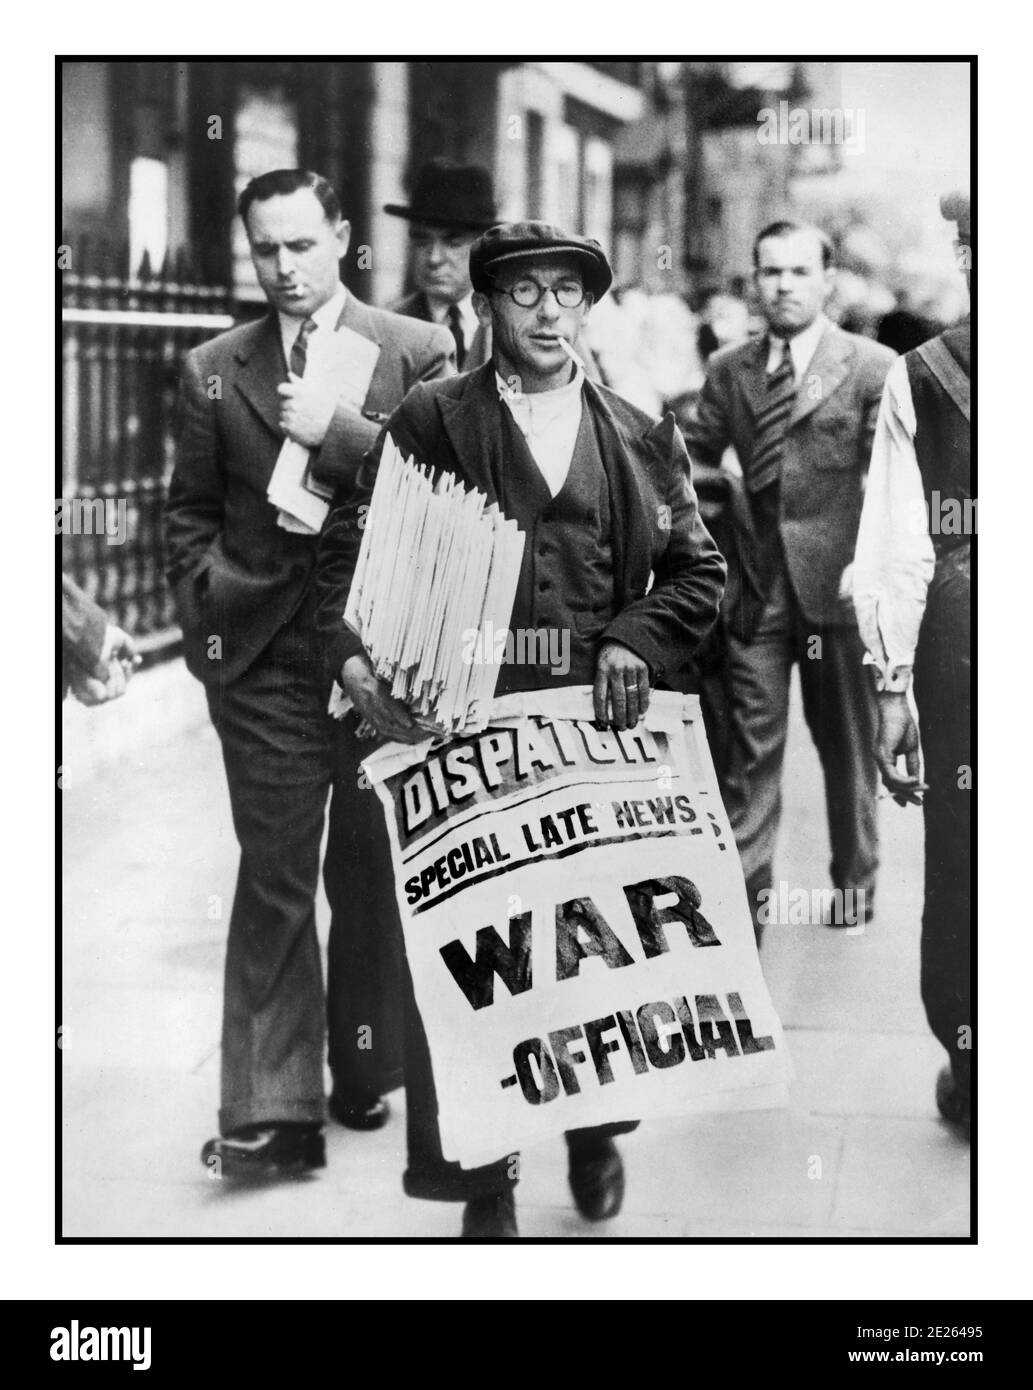 NEWS HEADLINE WAR 1939 WW2 fornitore di notizie per il Regno Unito London Dispatch giornale in possesso poster che annuncia 'UFFICIALE DI GUERRA' l'inizio Della seconda guerra mondiale in Gran Bretagna seconda guerra mondiale Foto Stock